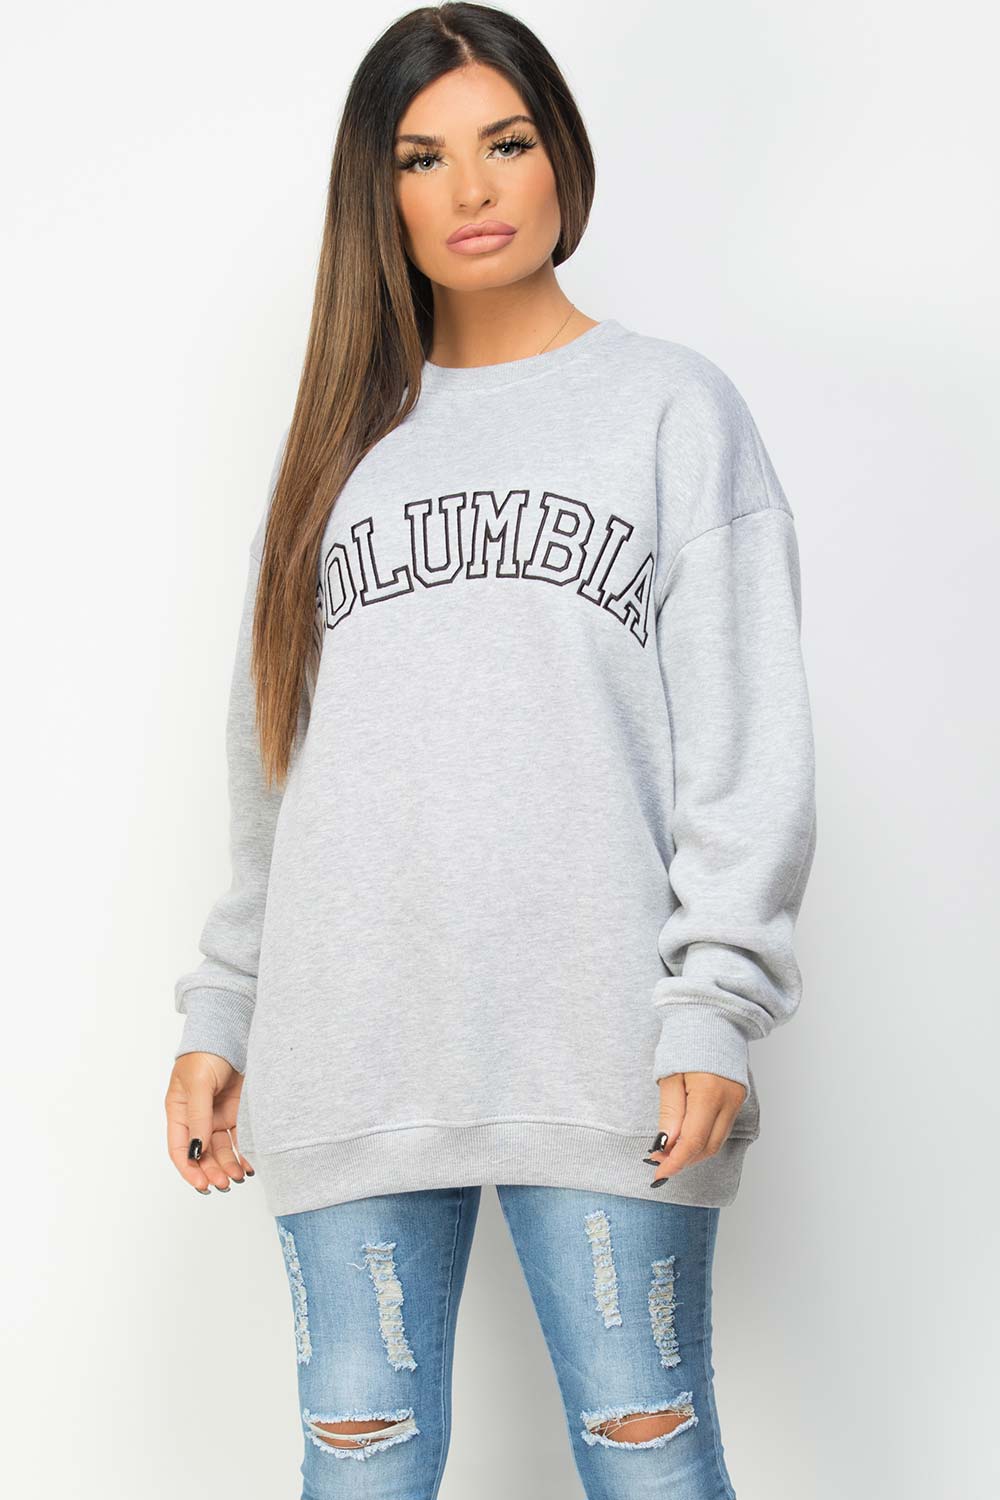 columbia embroidery sweatshirt grey 